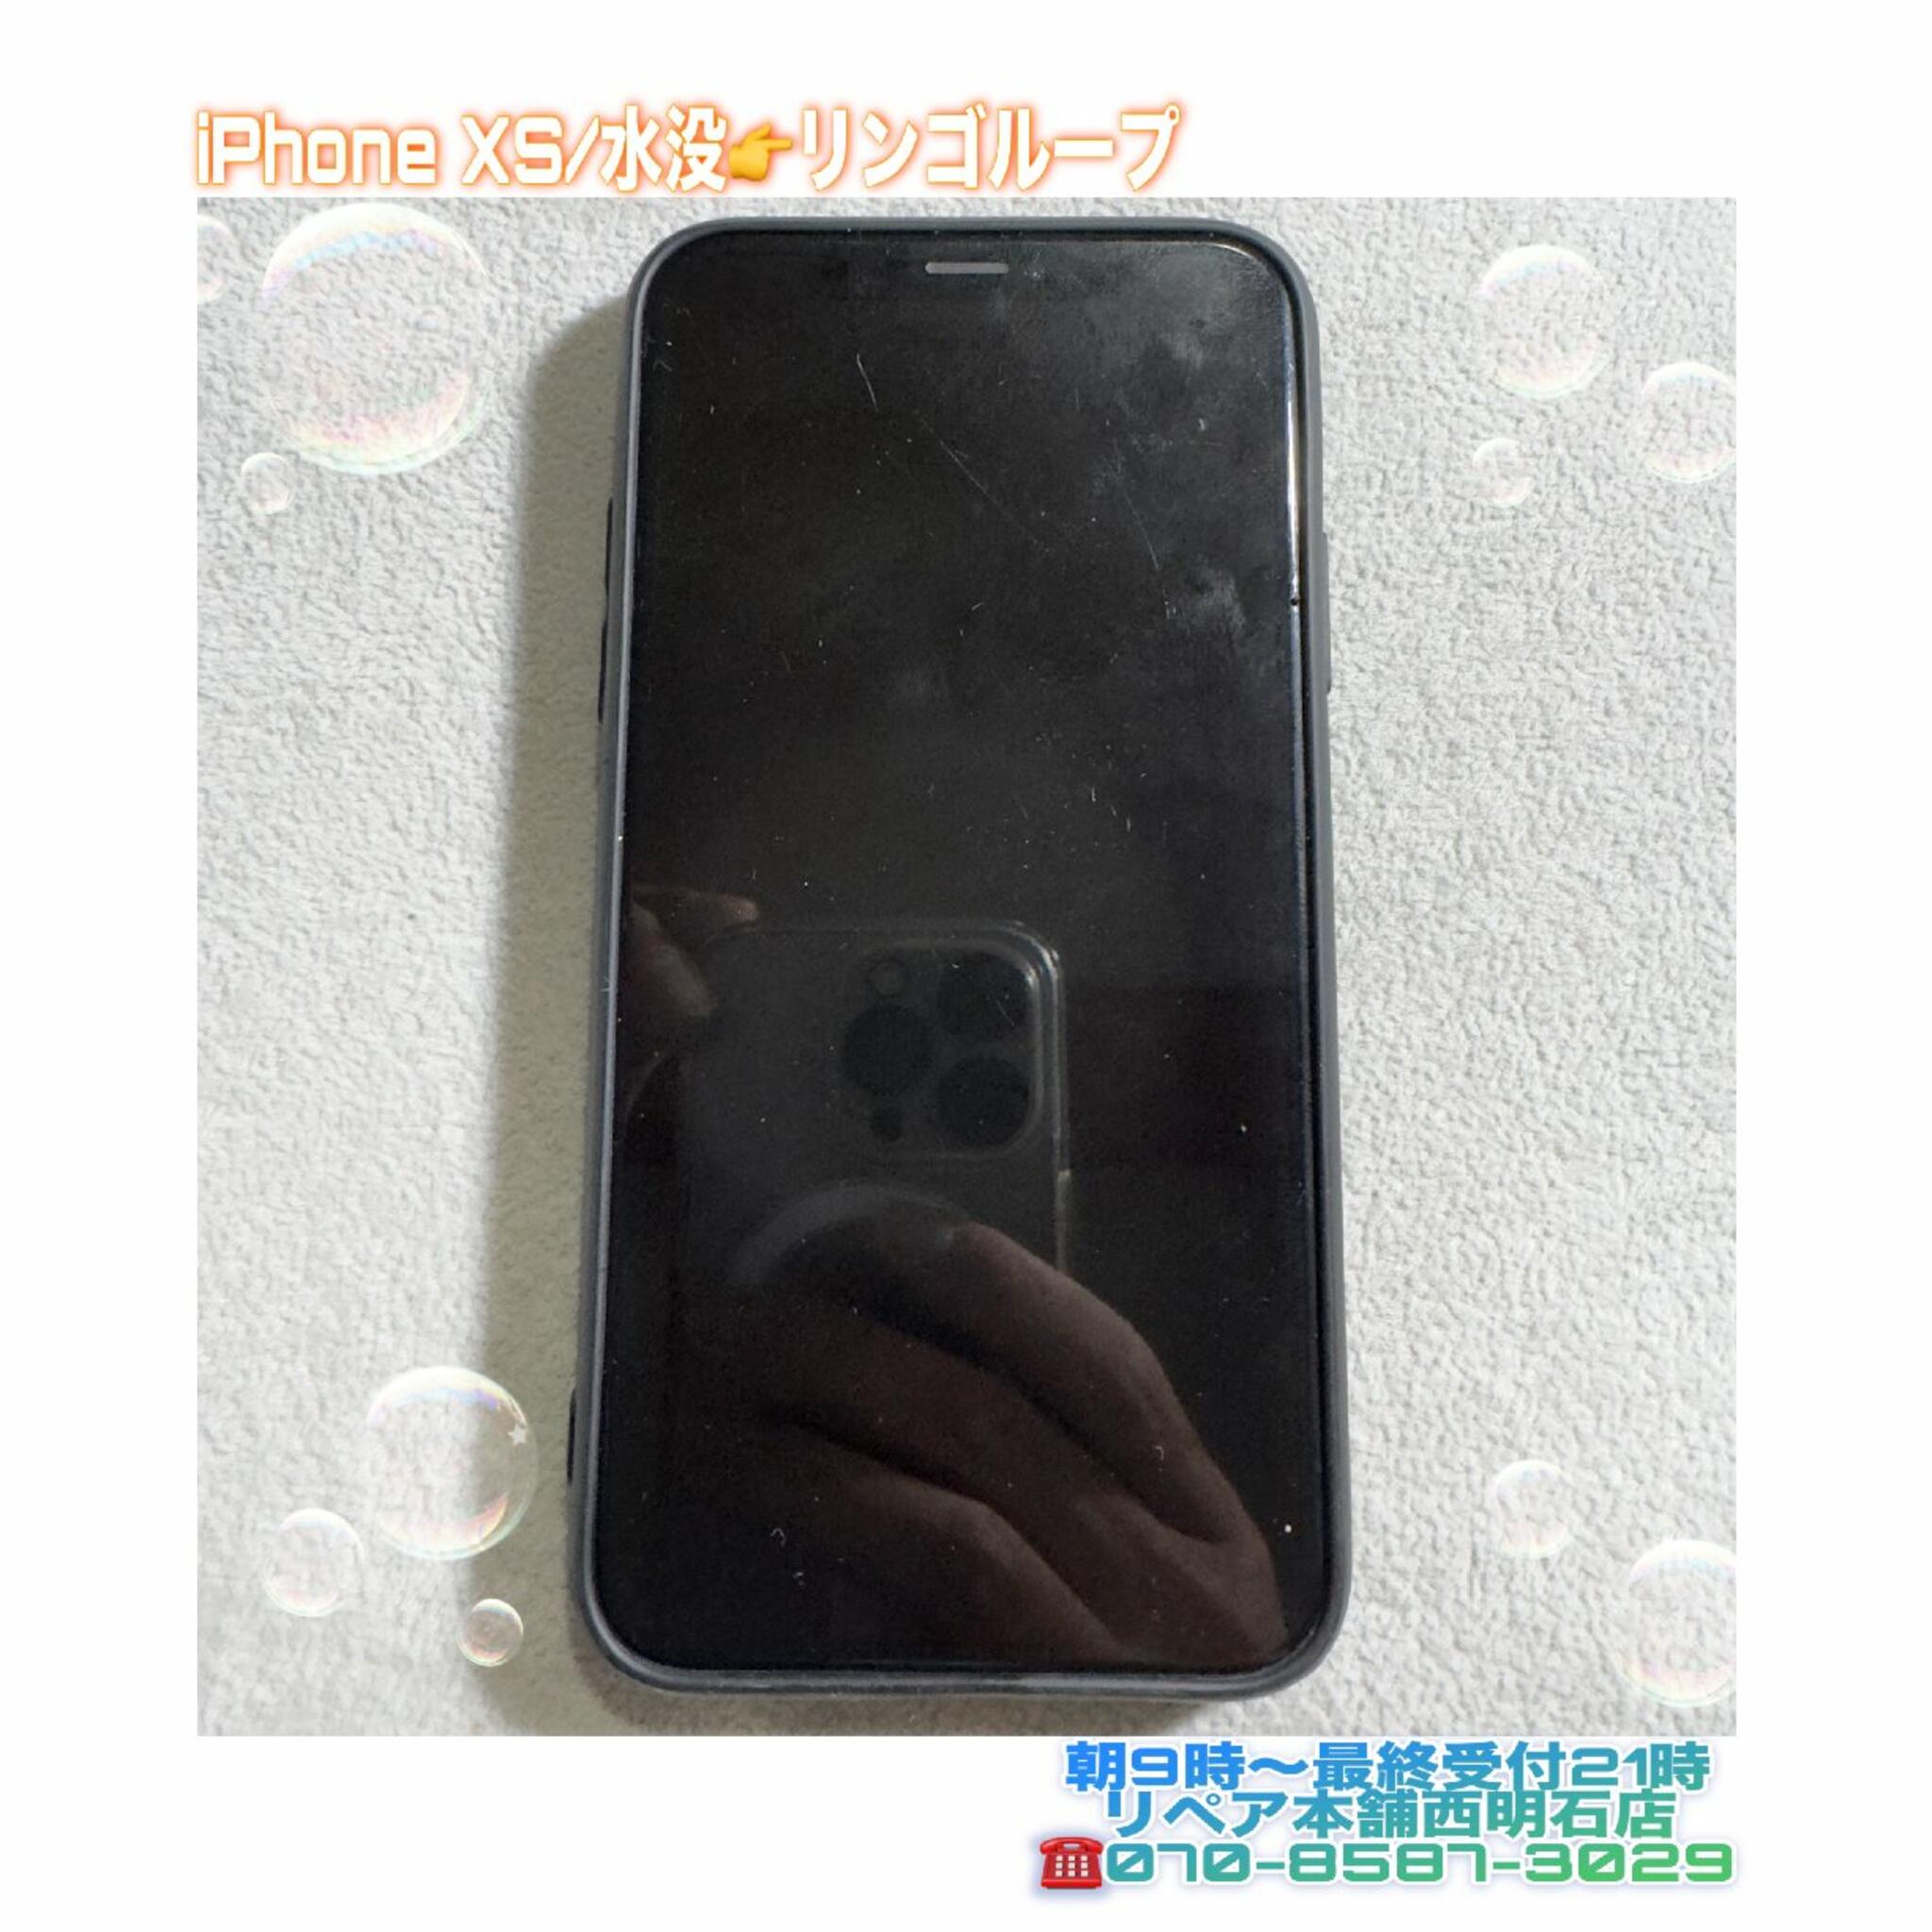 iPhone修理 明石 リペア本舗 西明石店からのお知らせ(💡神戸市西区の方より、iPhone XSが水没でリンゴループになるとご相談頂きました🍎)に関する写真